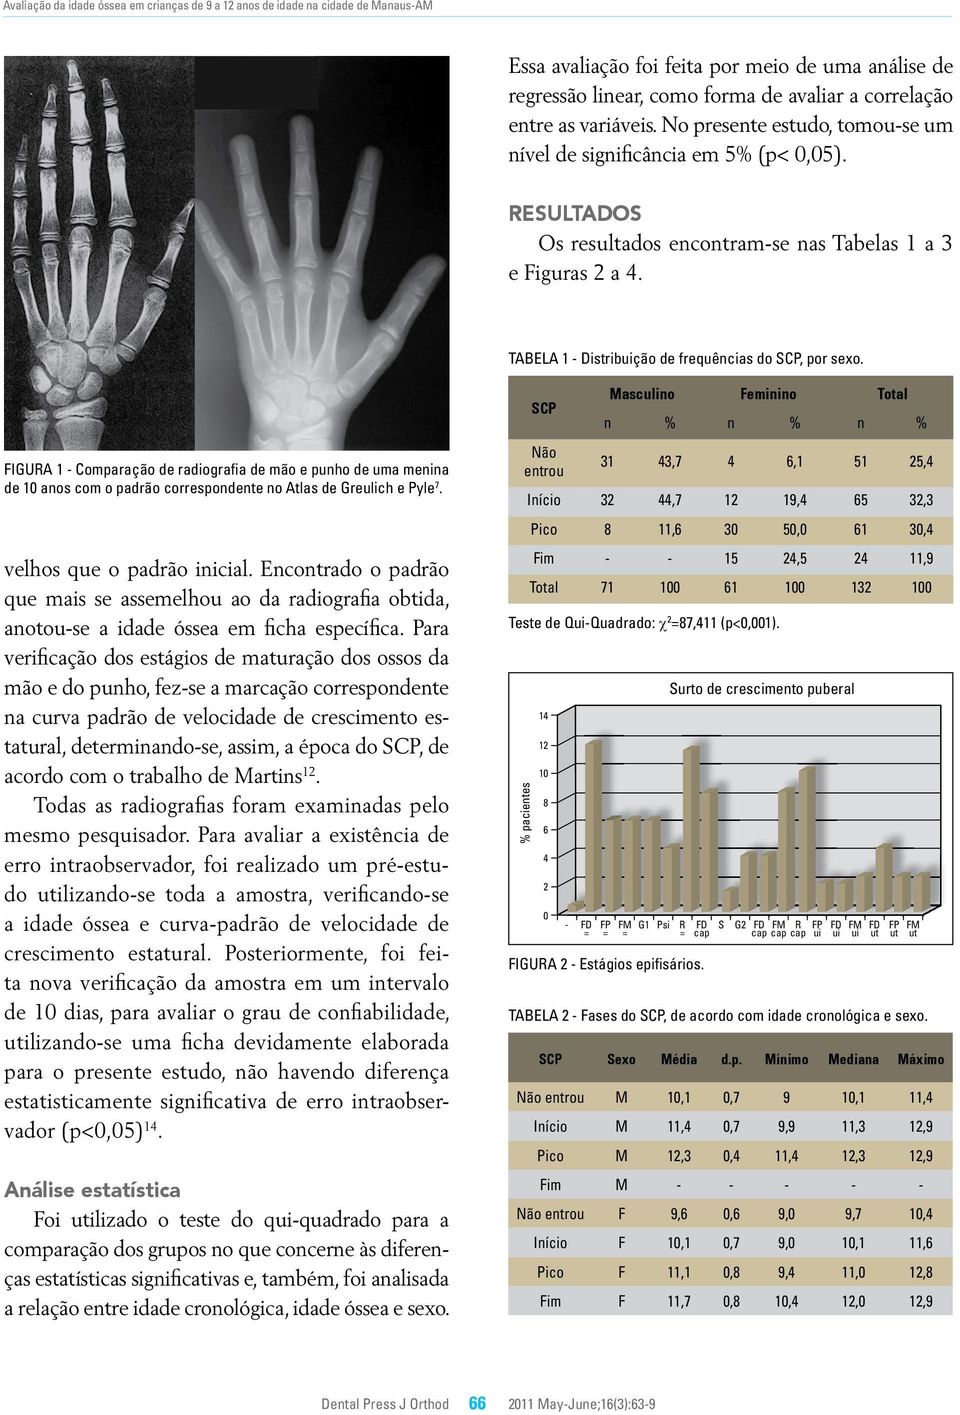 TABELA 1 - Distribuição de frequências do SCP, por sexo. FIGURA 1 - Comparação de radiografia de mão e punho de uma menina de 10 anos com o padrão correspondente no Atlas de Greulich e Pyle 7.